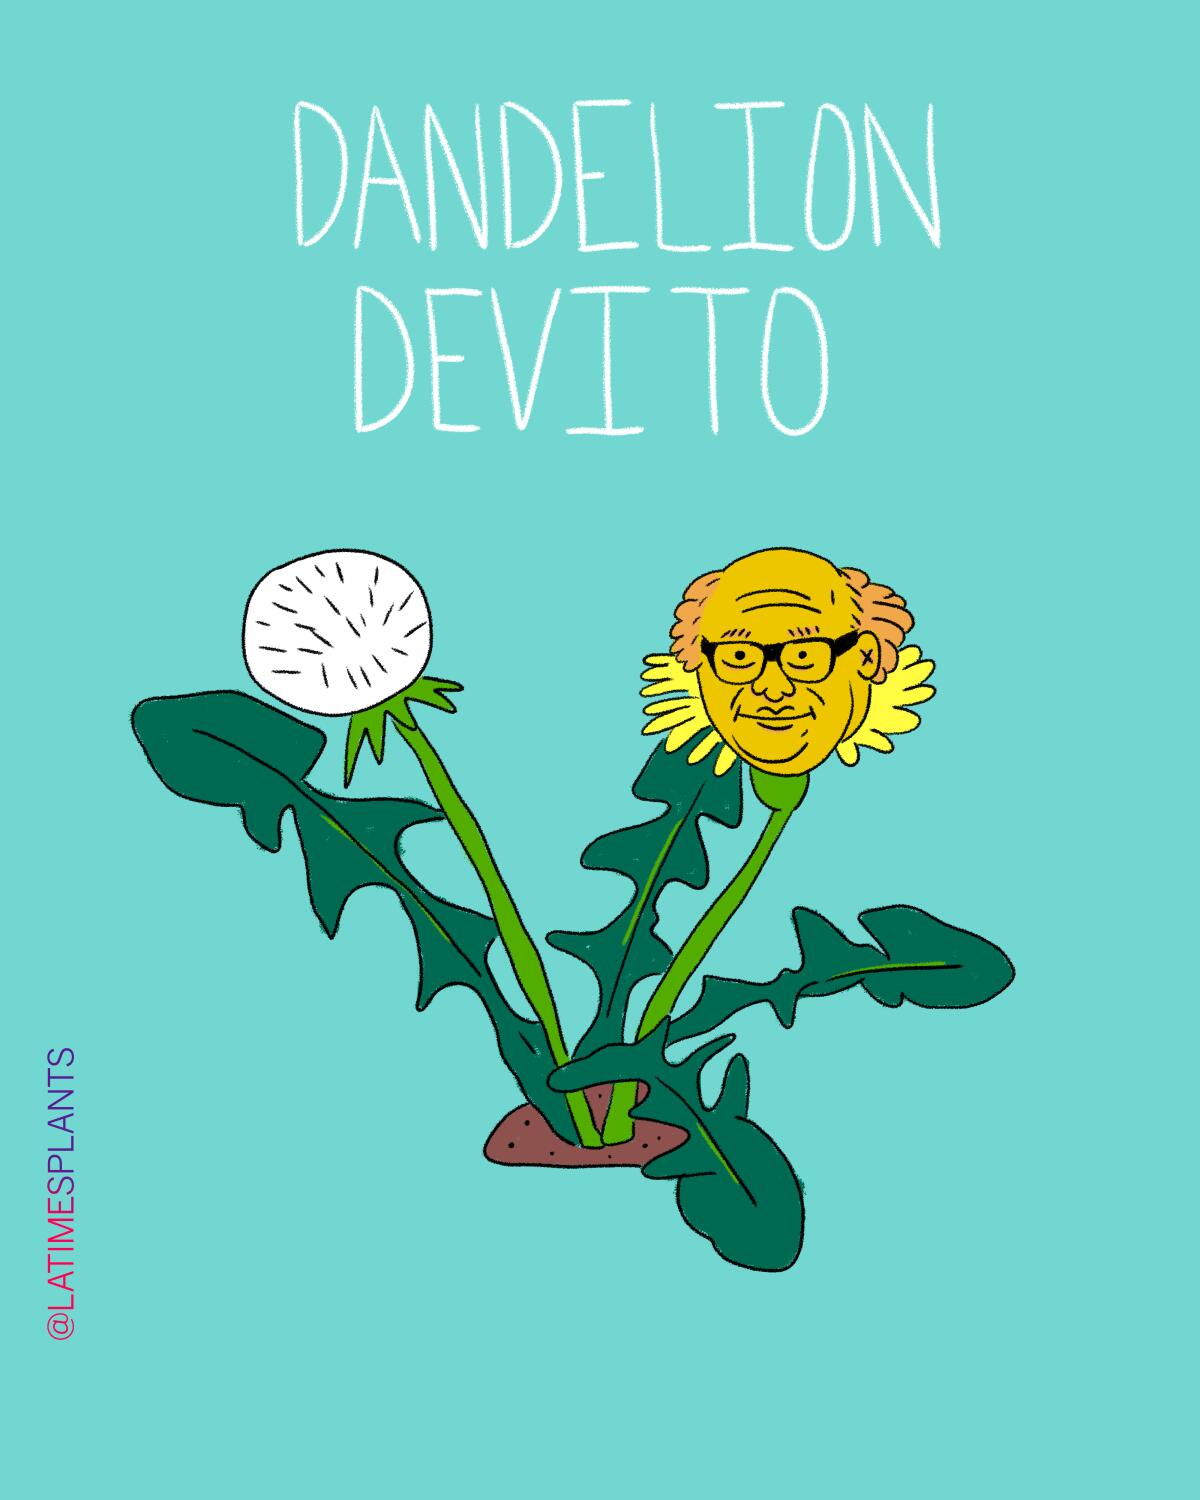 Dandelion devito